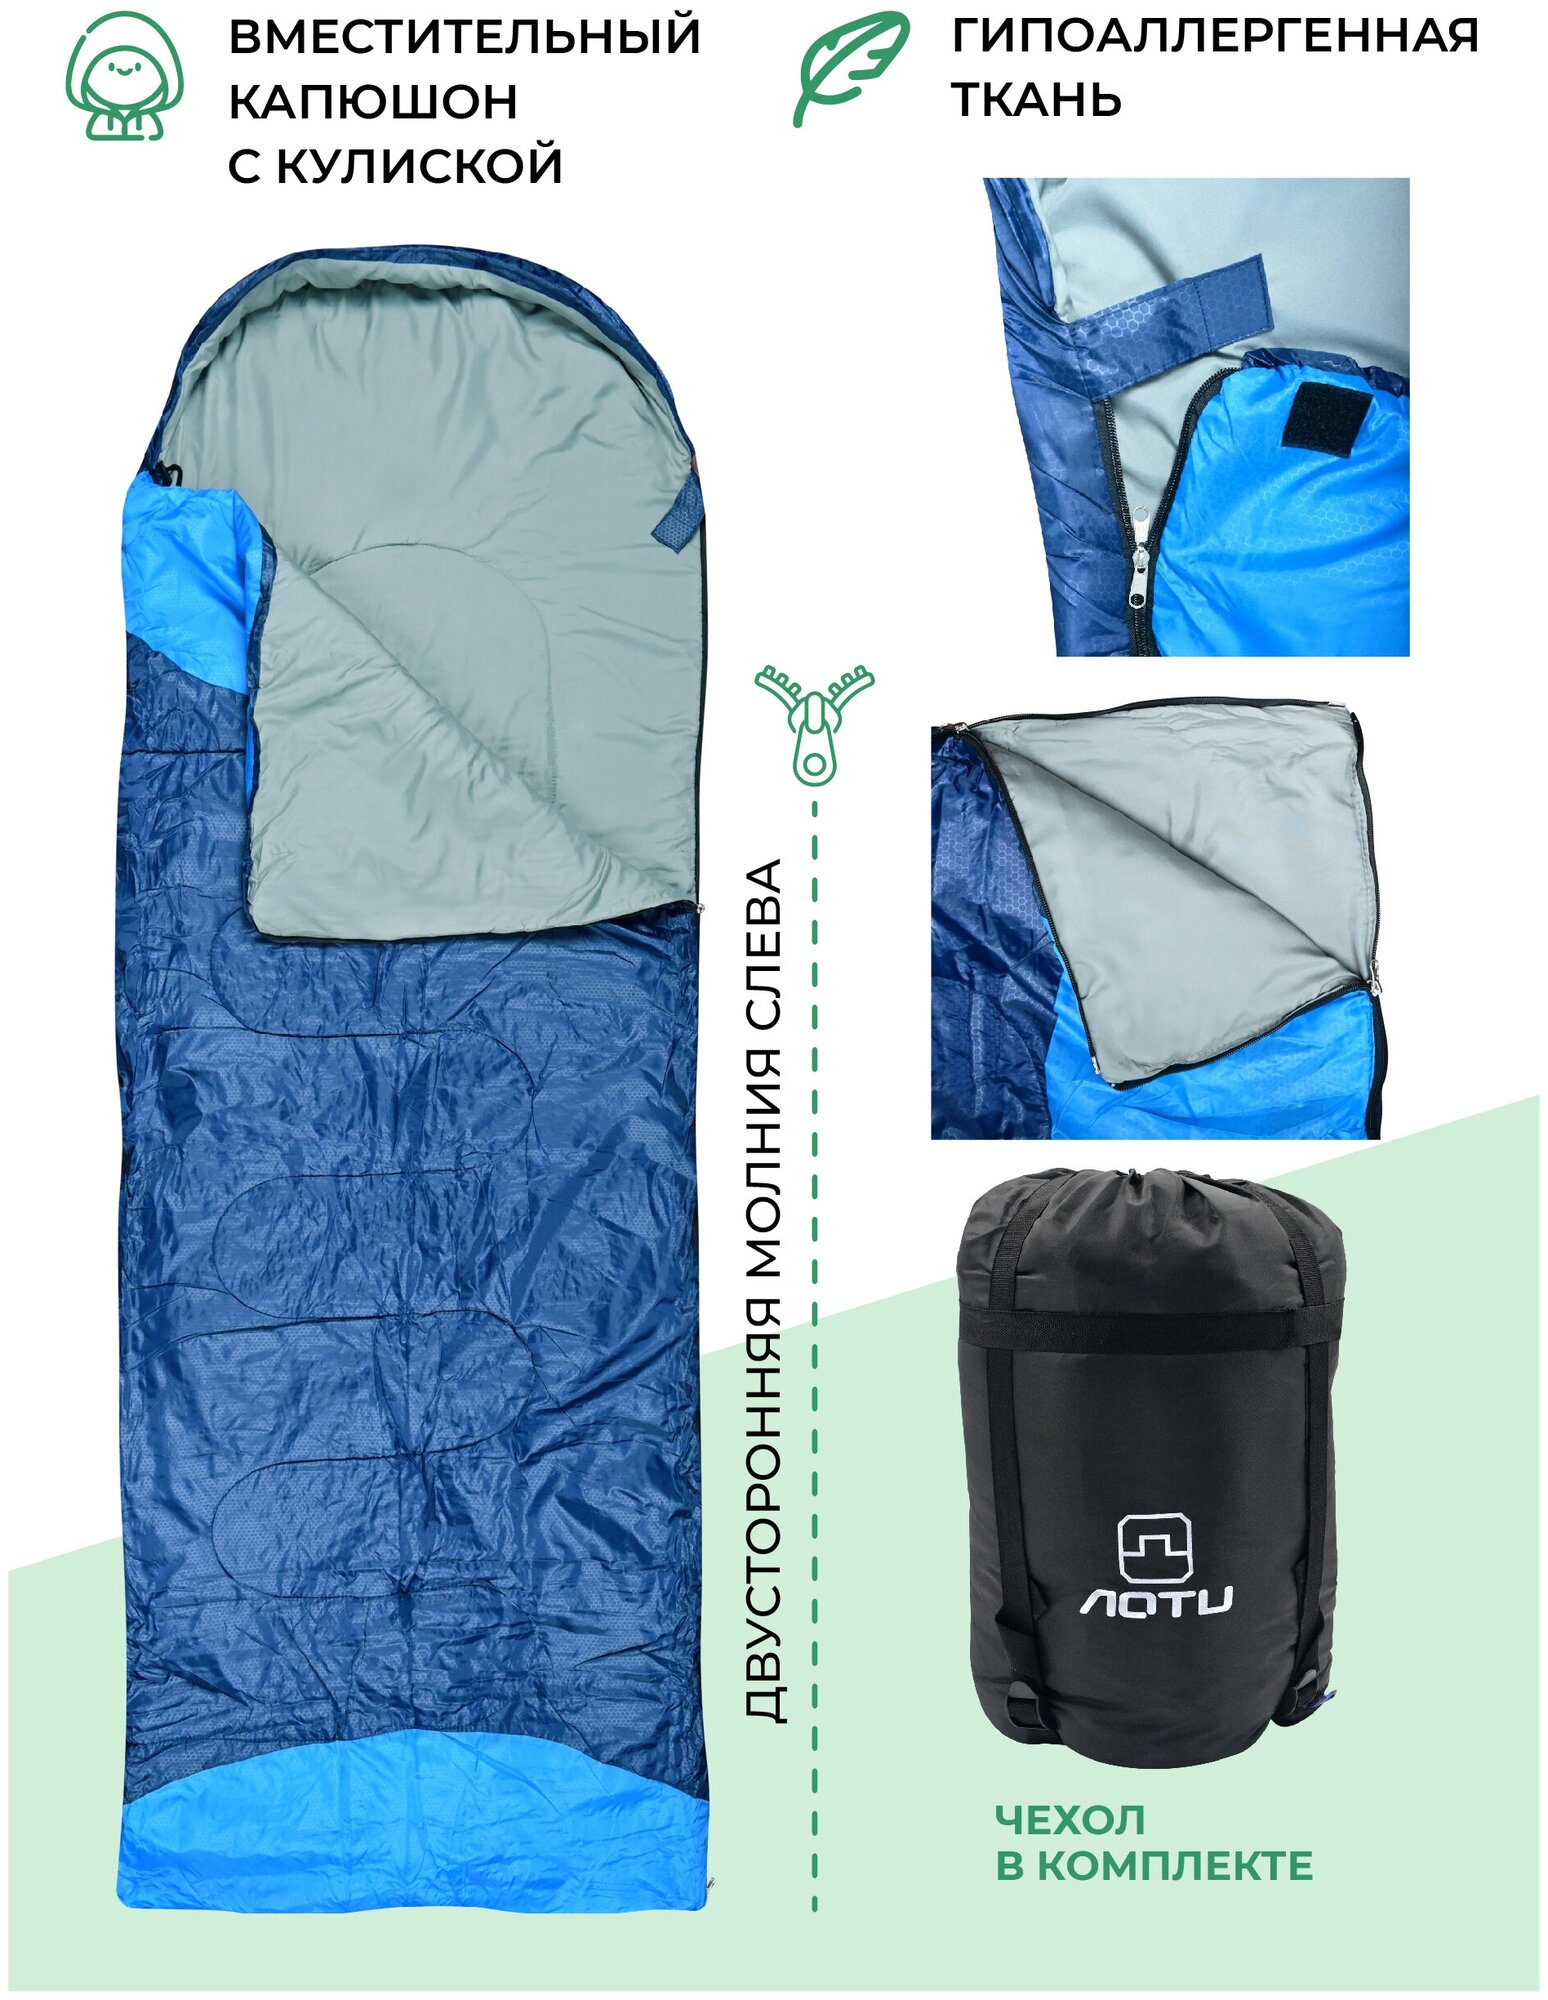 Водонепроницаемый спальный мешок демисезонный AT6101 (левый) 1,3 кг 190х75 см с подголовником 30 см синий / Одинарный спальник туристический